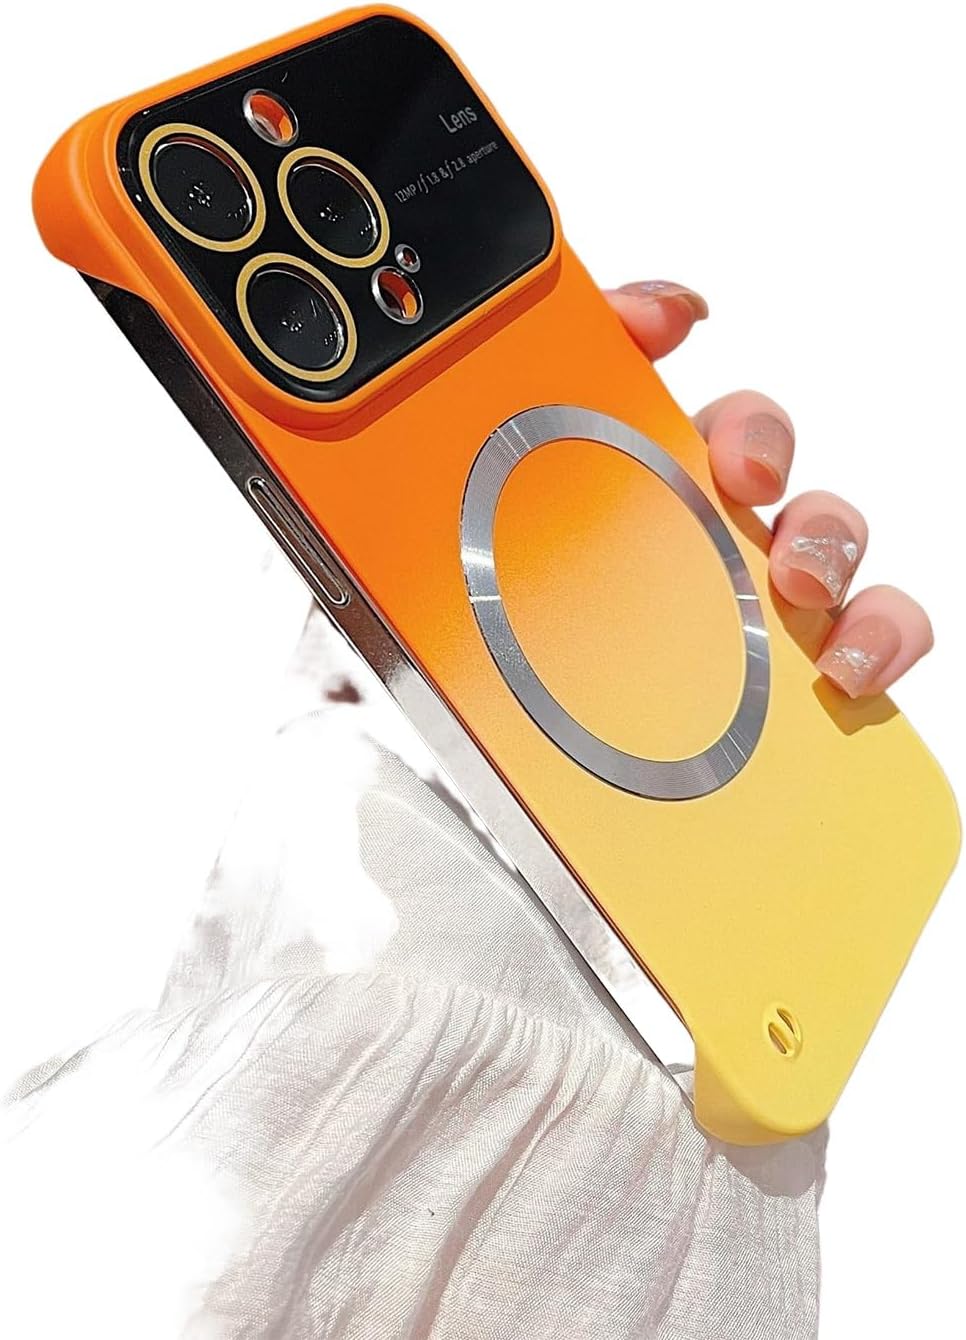 Duncan iPhoneCase Shipmycase Orange-Yellow iPhone 14 PRO MAX 